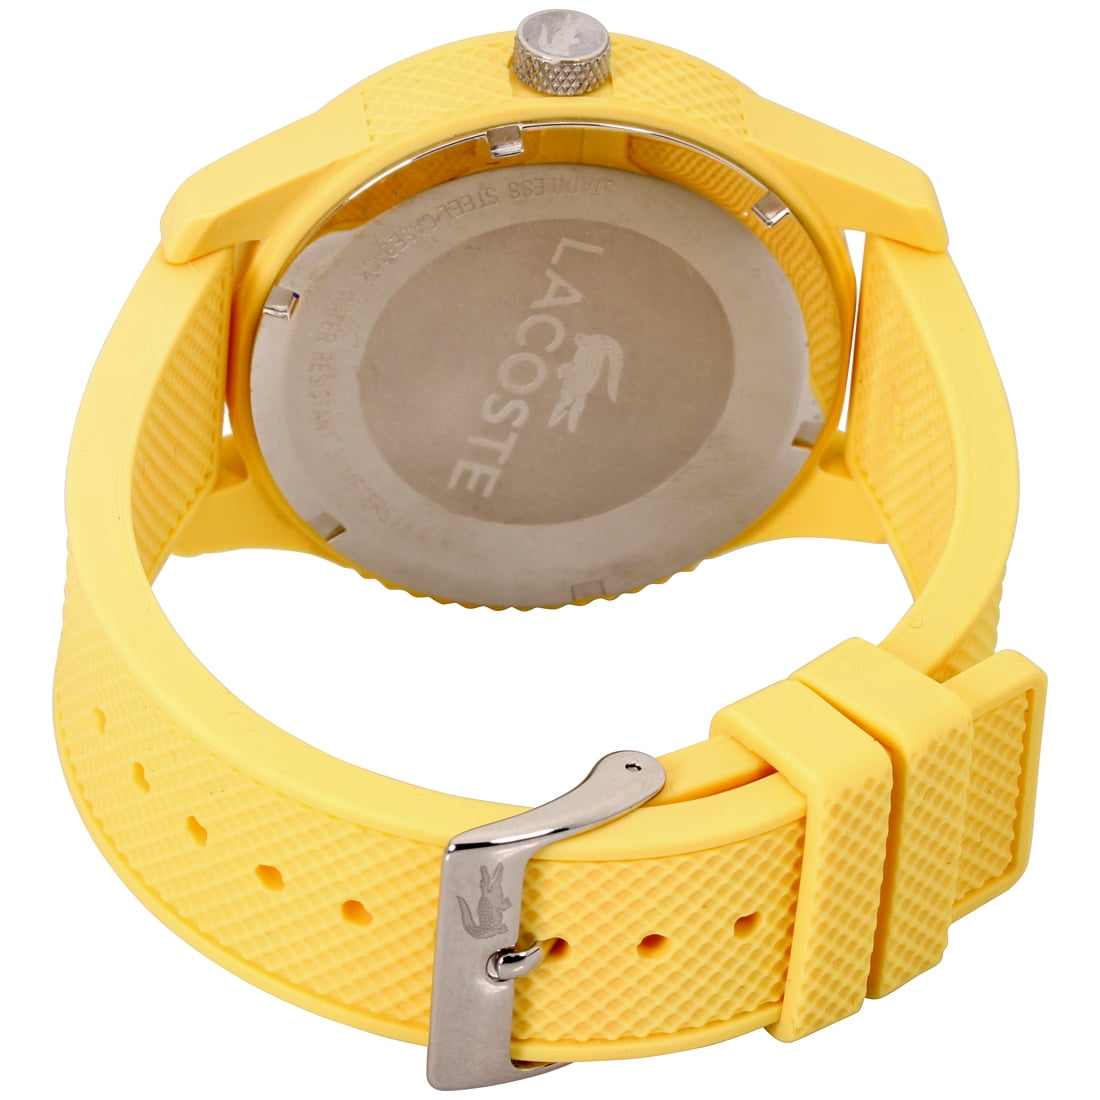 L1212 Yellow Unisex Lacoste 2010774 Dial Watch Movement Quartz